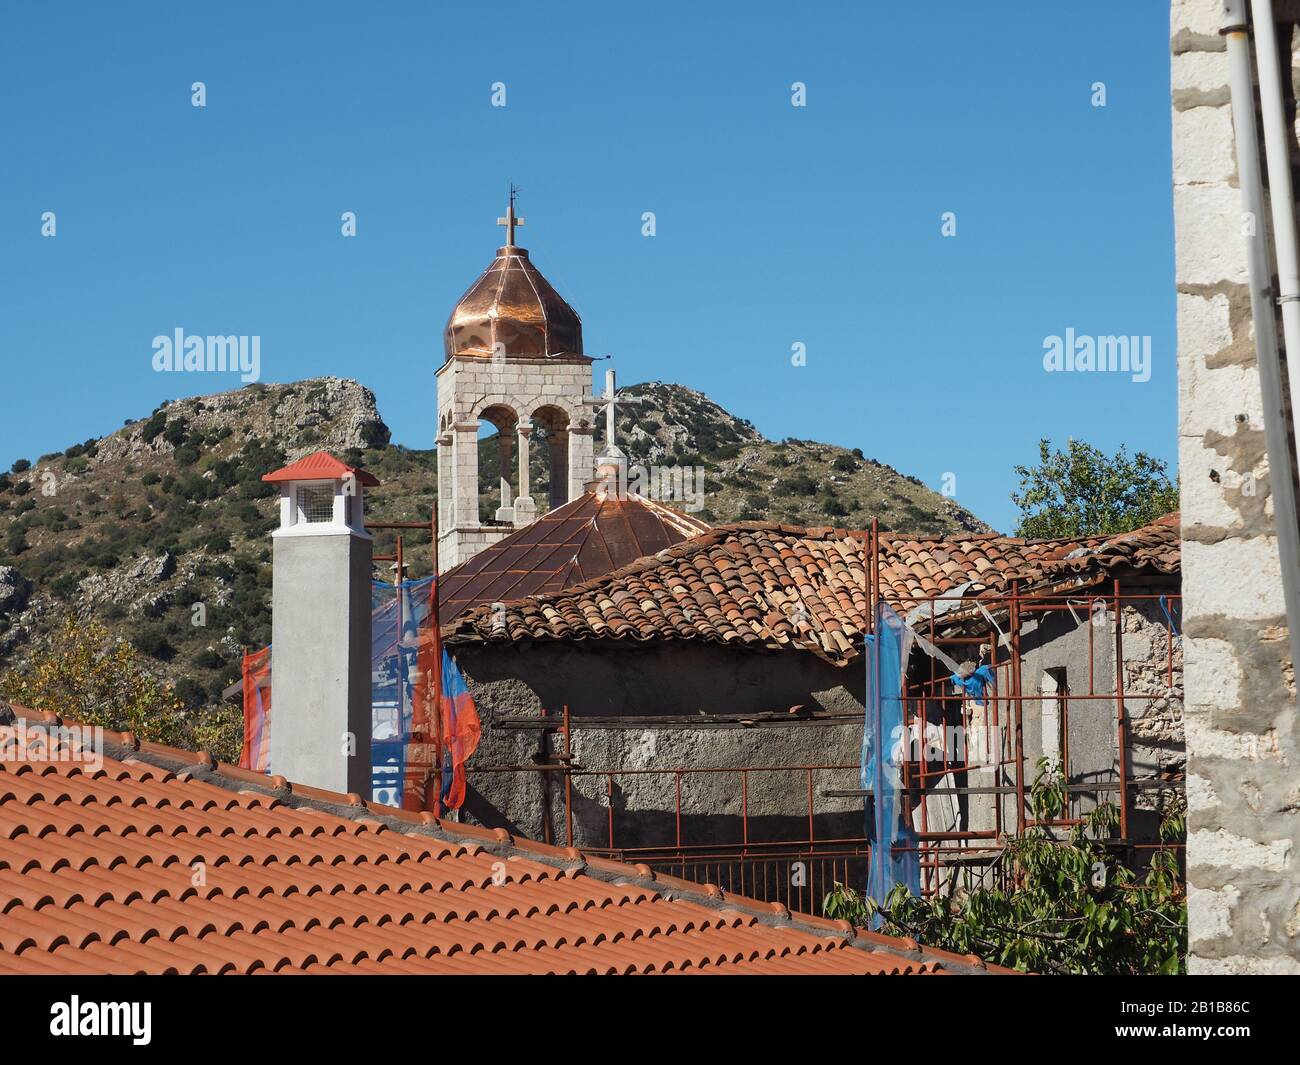 Fliesen- und Kirchturm mit Kupferkuppel und Kreuz in Dimitrana, Arcadia, Peloponnes, Griechenland, gegen einen blauen Himmel. Stockfoto